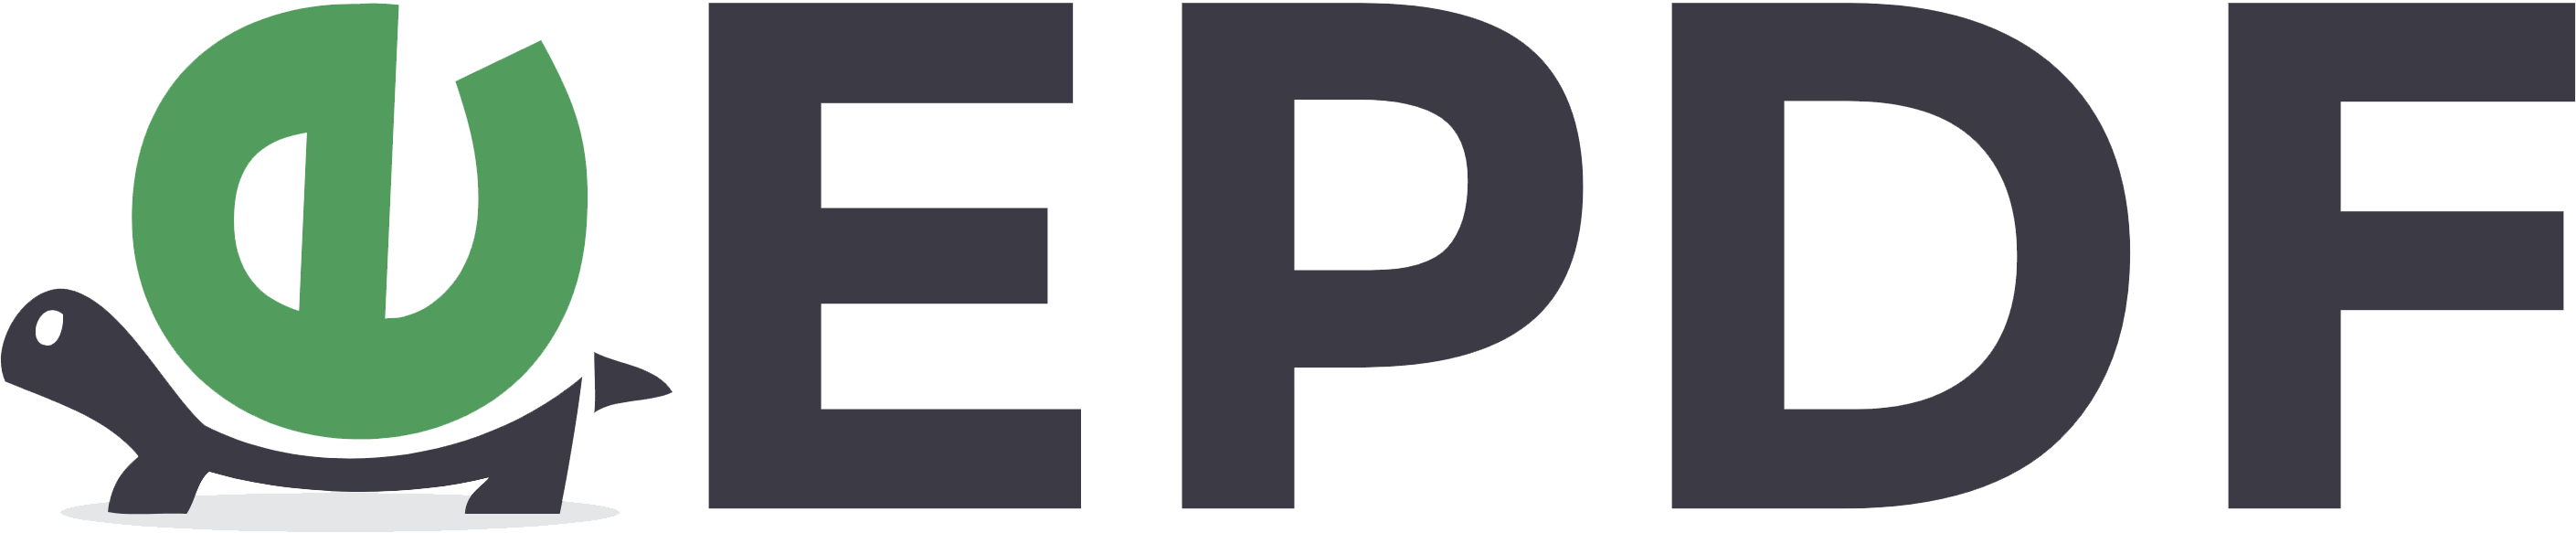 https://epdf.tips/assets/img/epdf_logo.png 